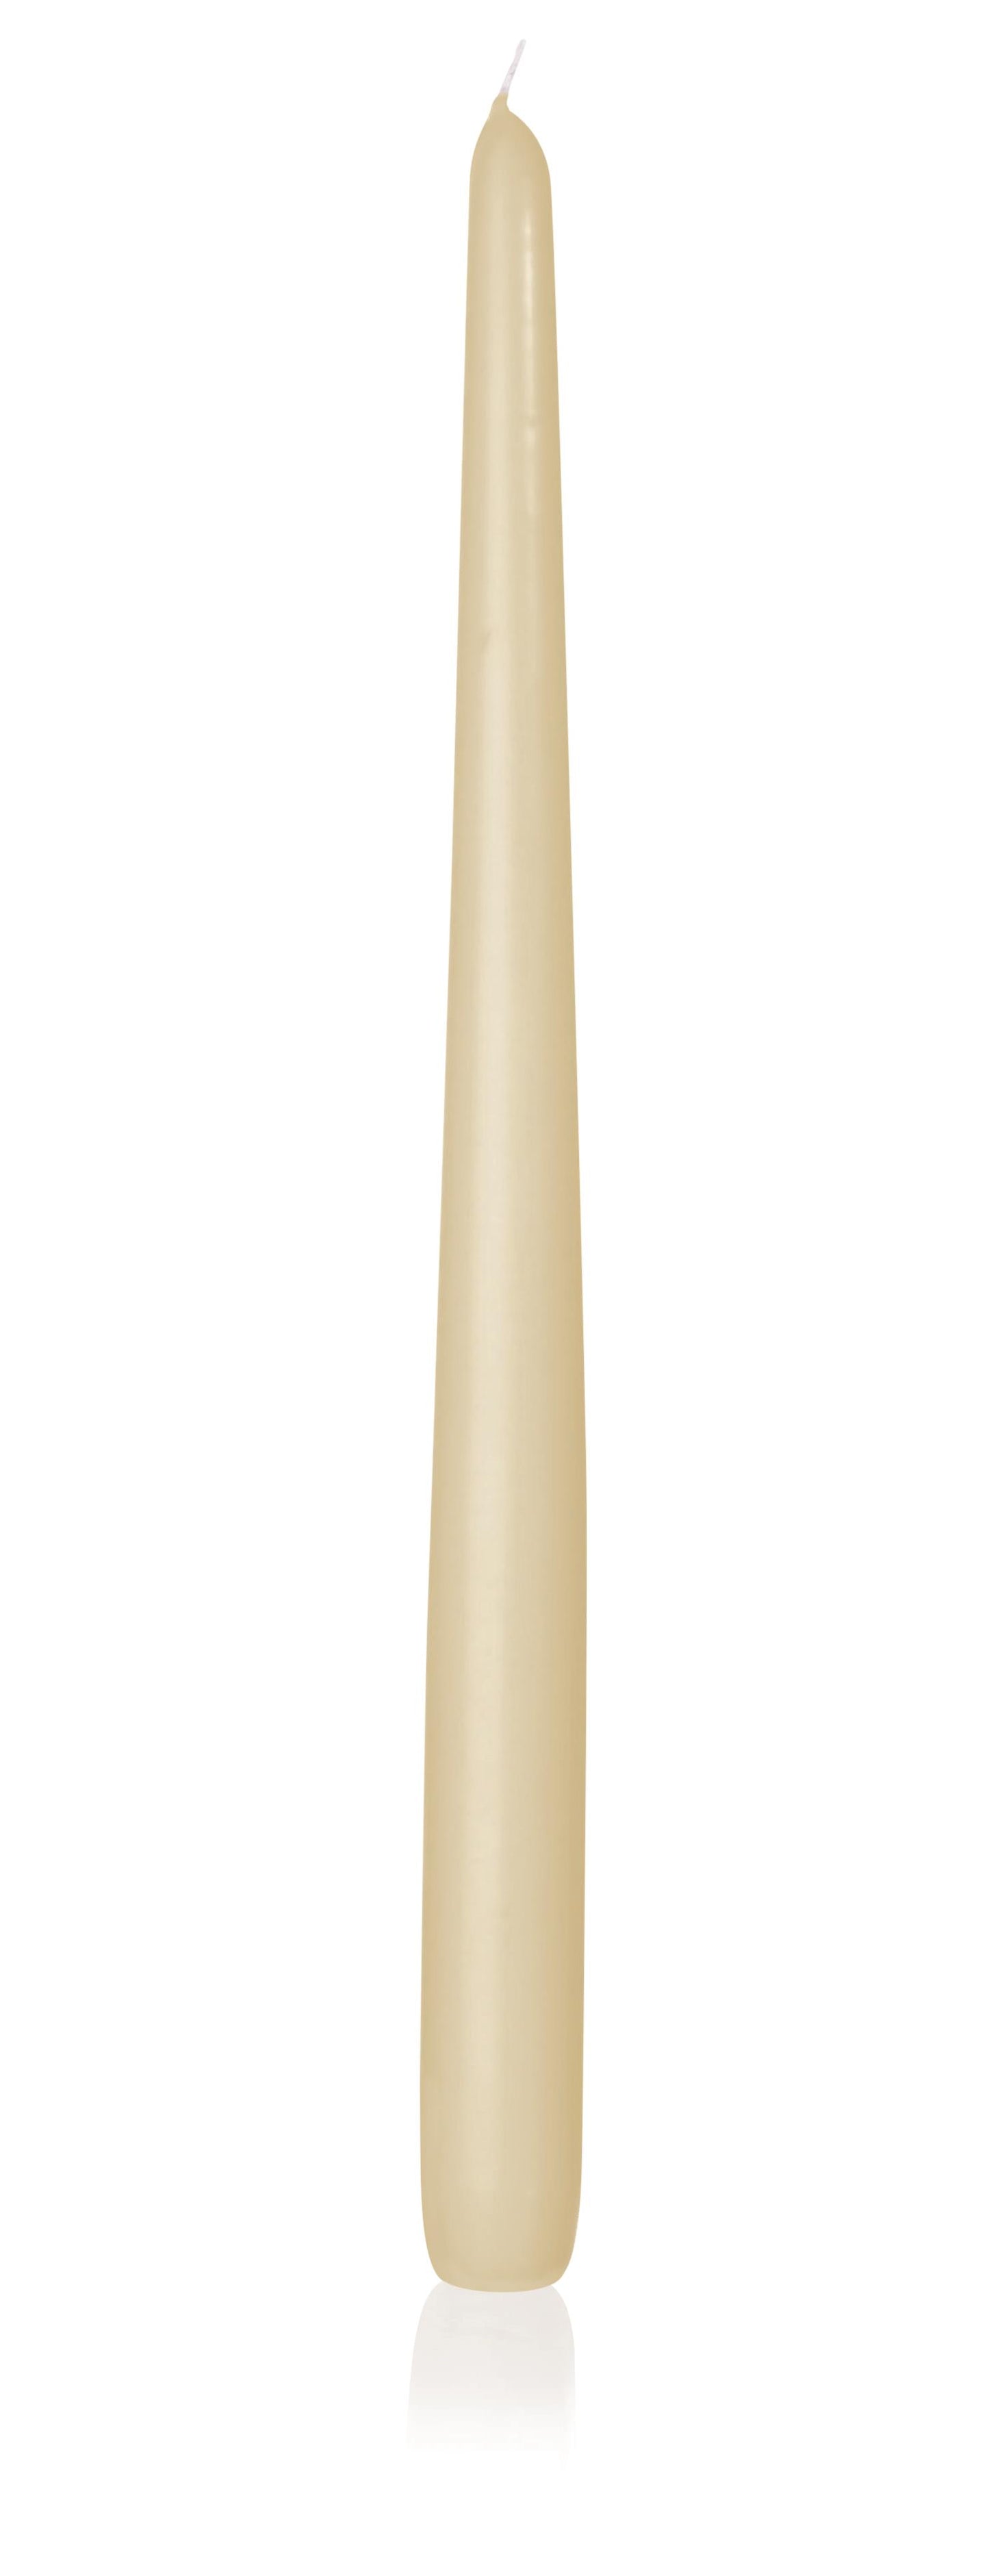 6x Konische Kerzen 400/25mm (Bisquit)